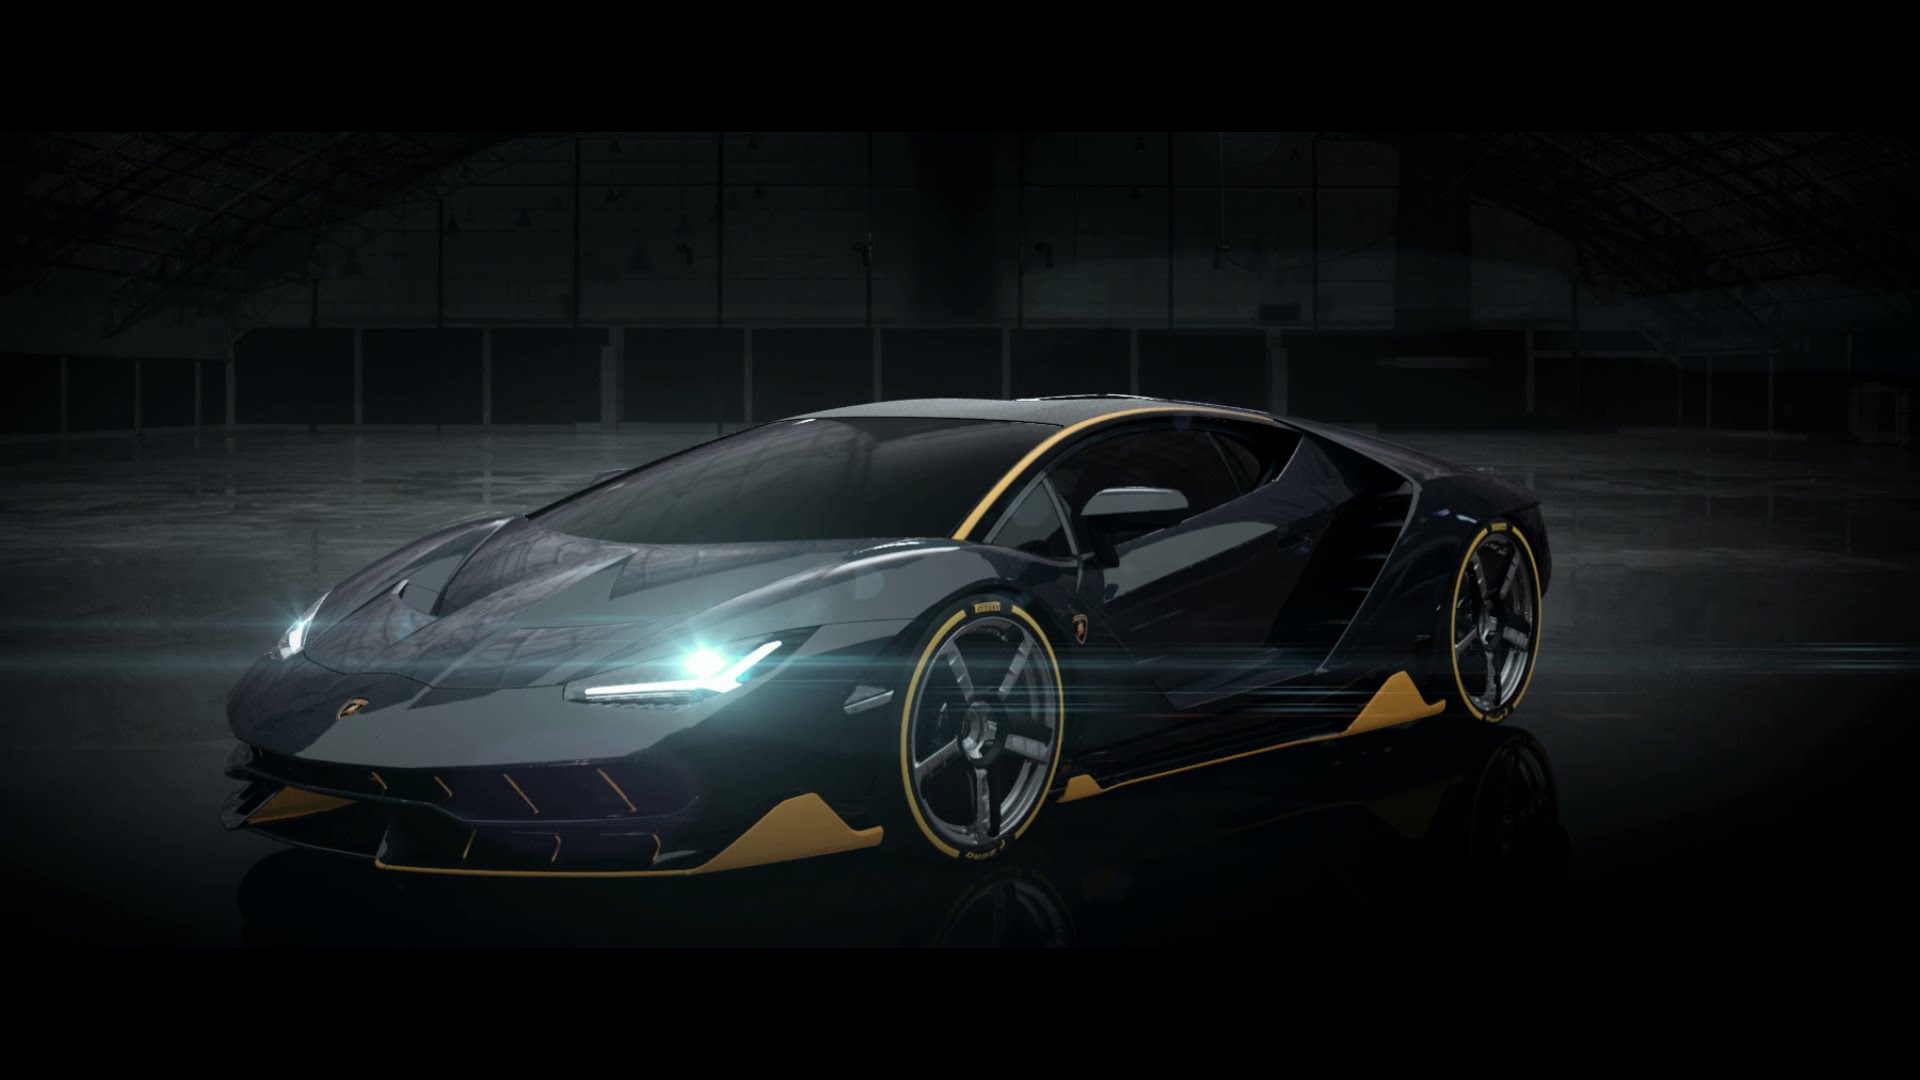 Top Features of Lamborghini Centenario LP 770-4 - Speed ...